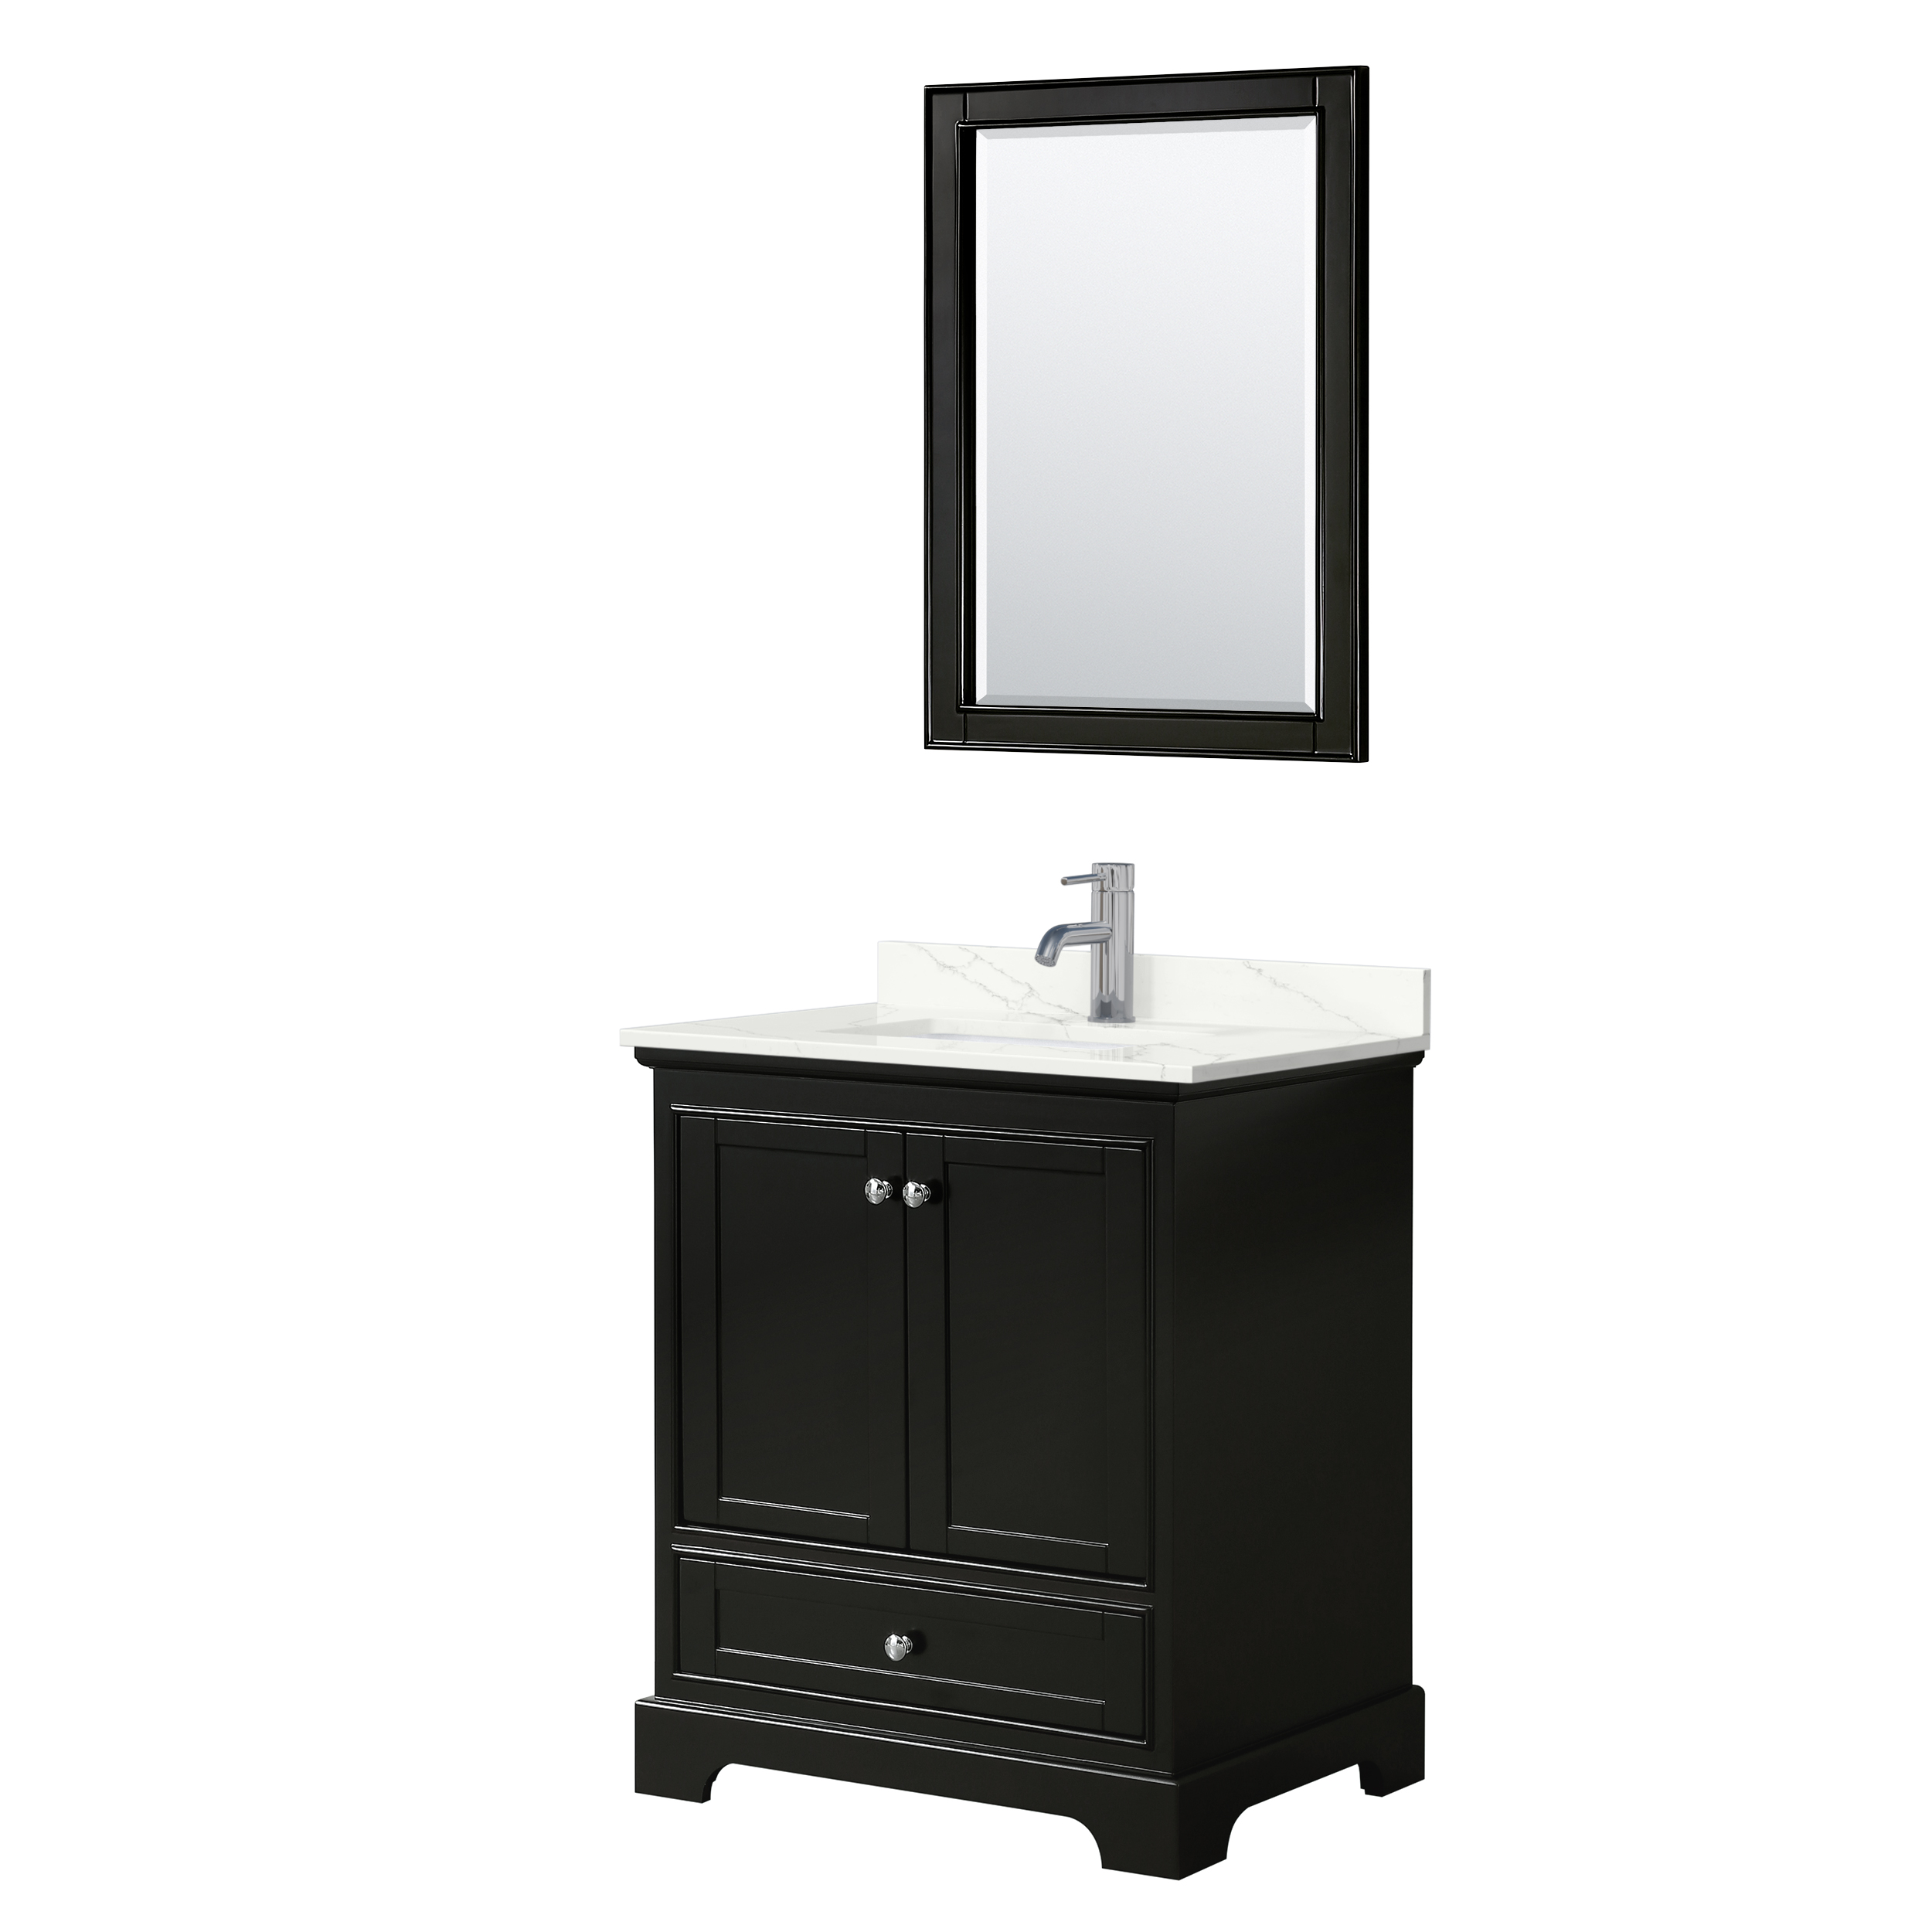 Deborah 30" Single Bathroom Vanity in Dark Espresso WC-2020-30-SGL-VAN-DES_